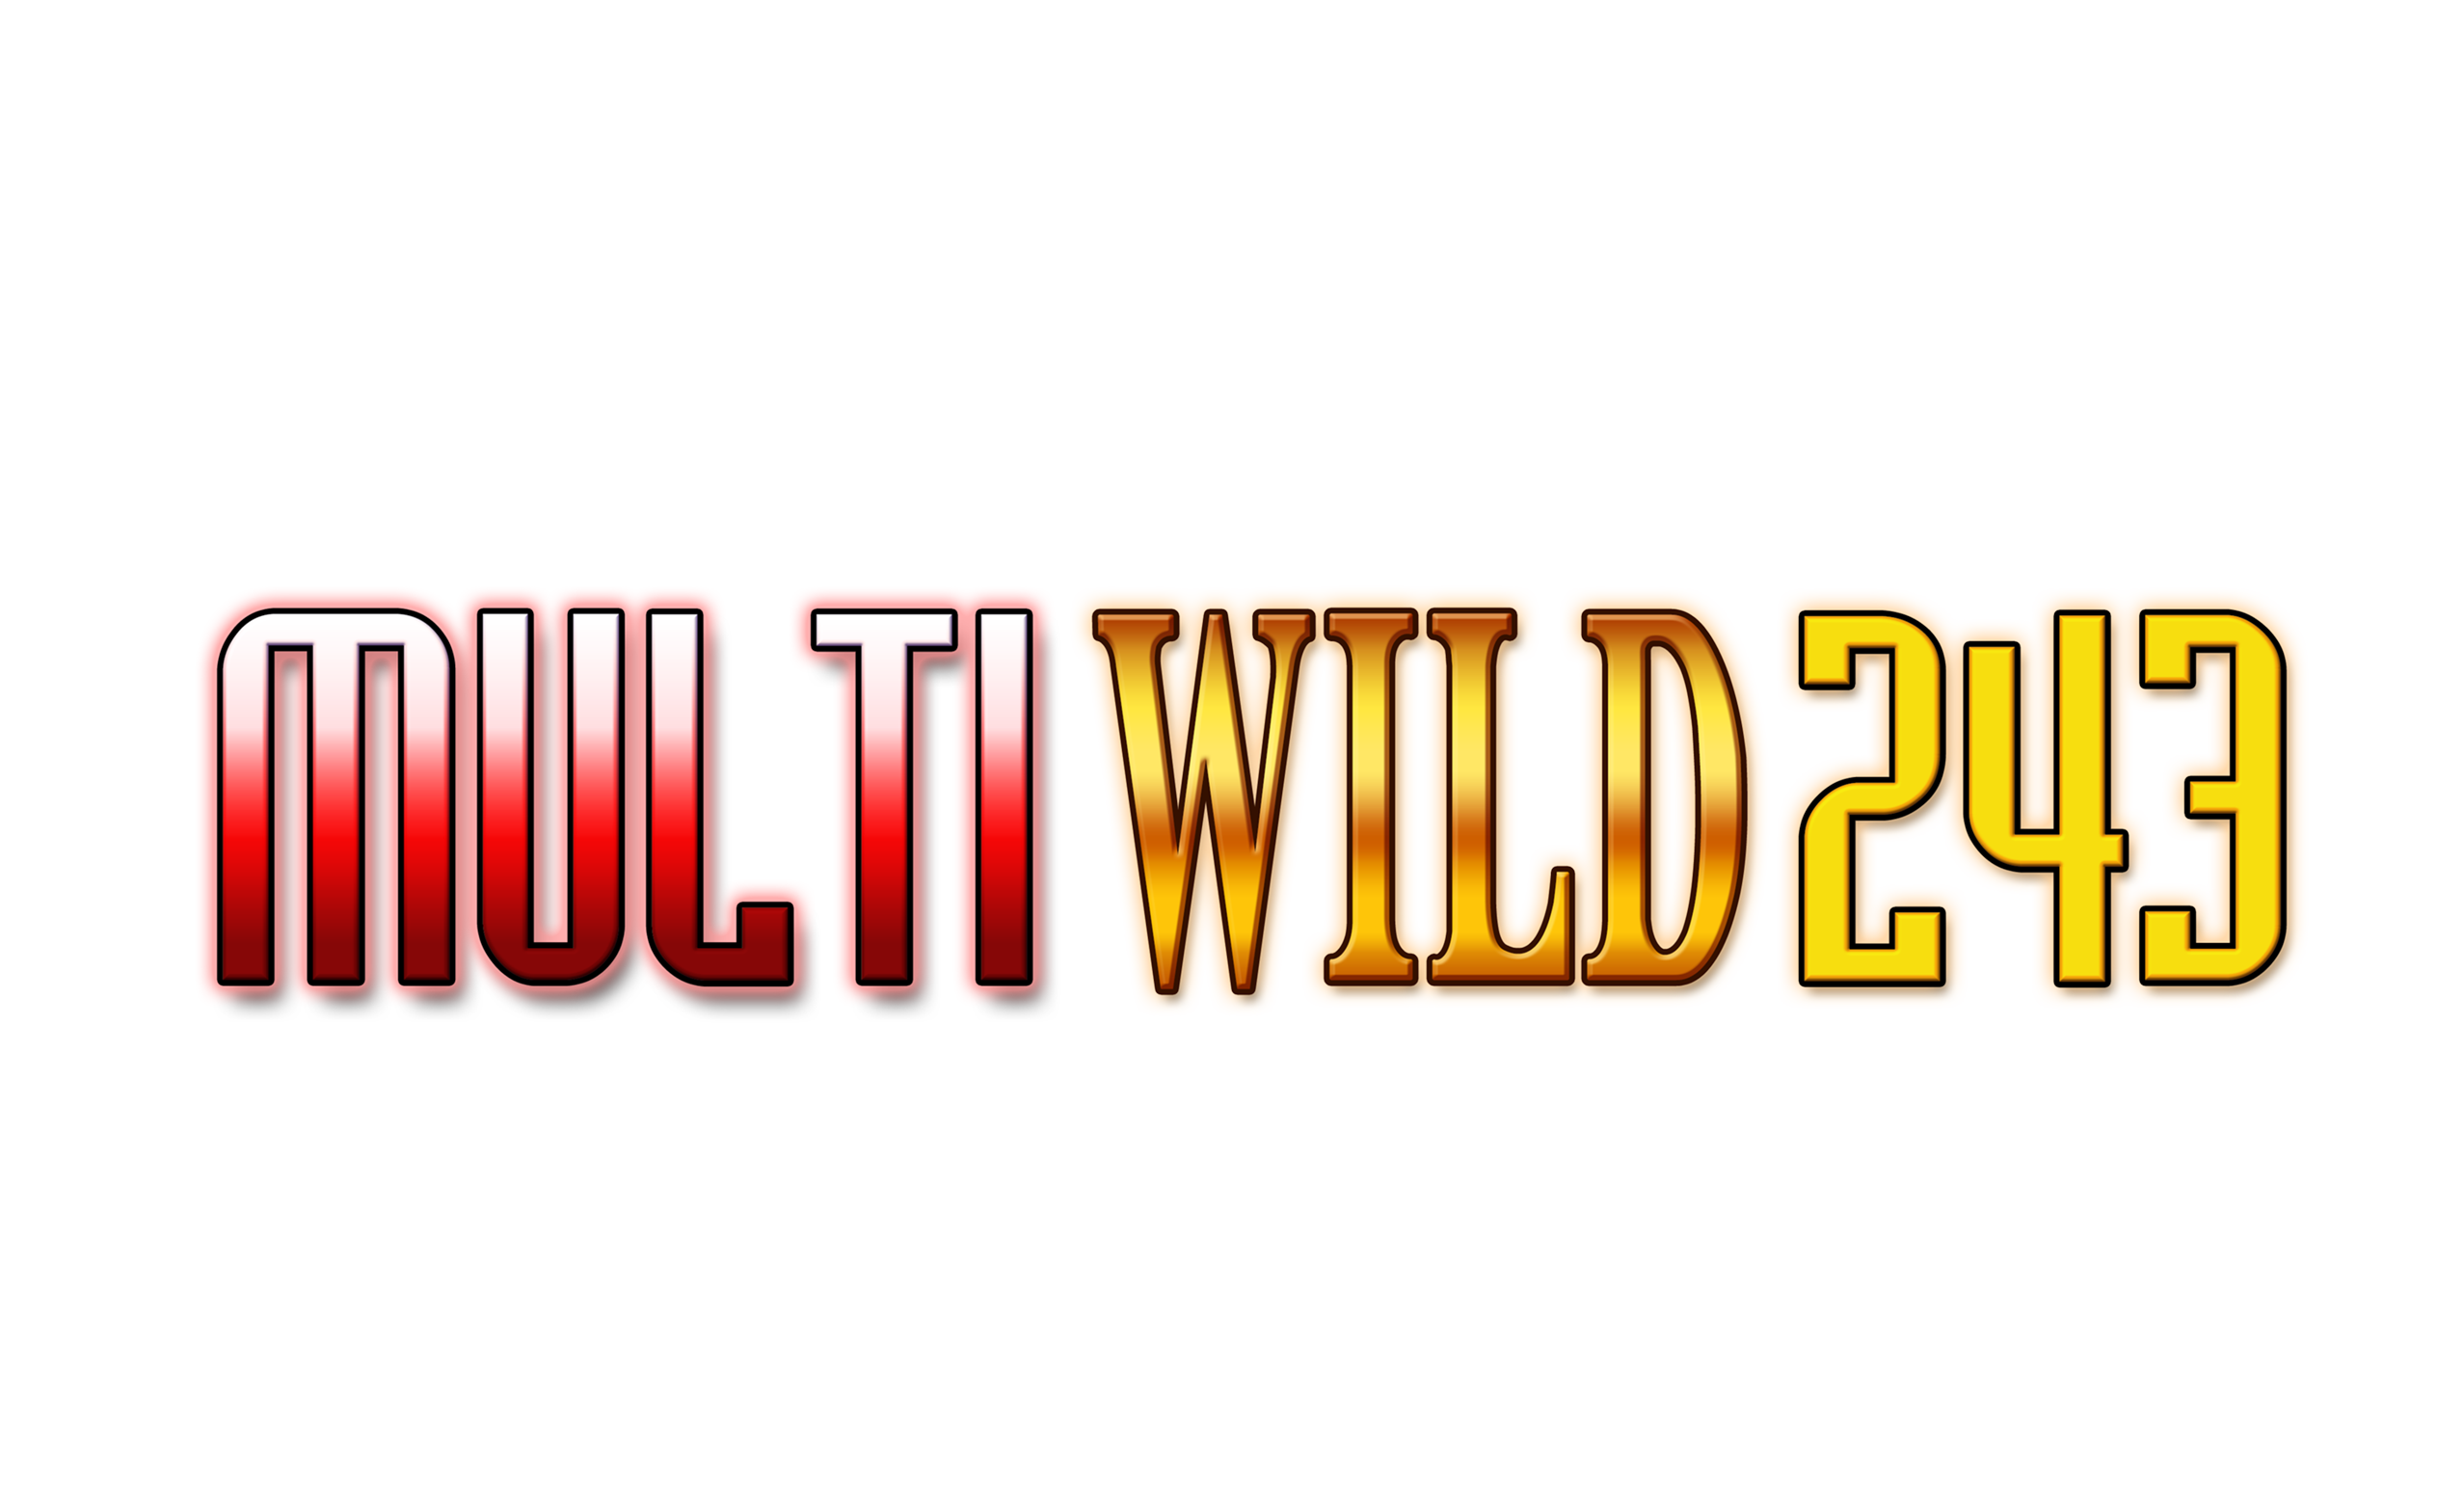 Multi Wild 243